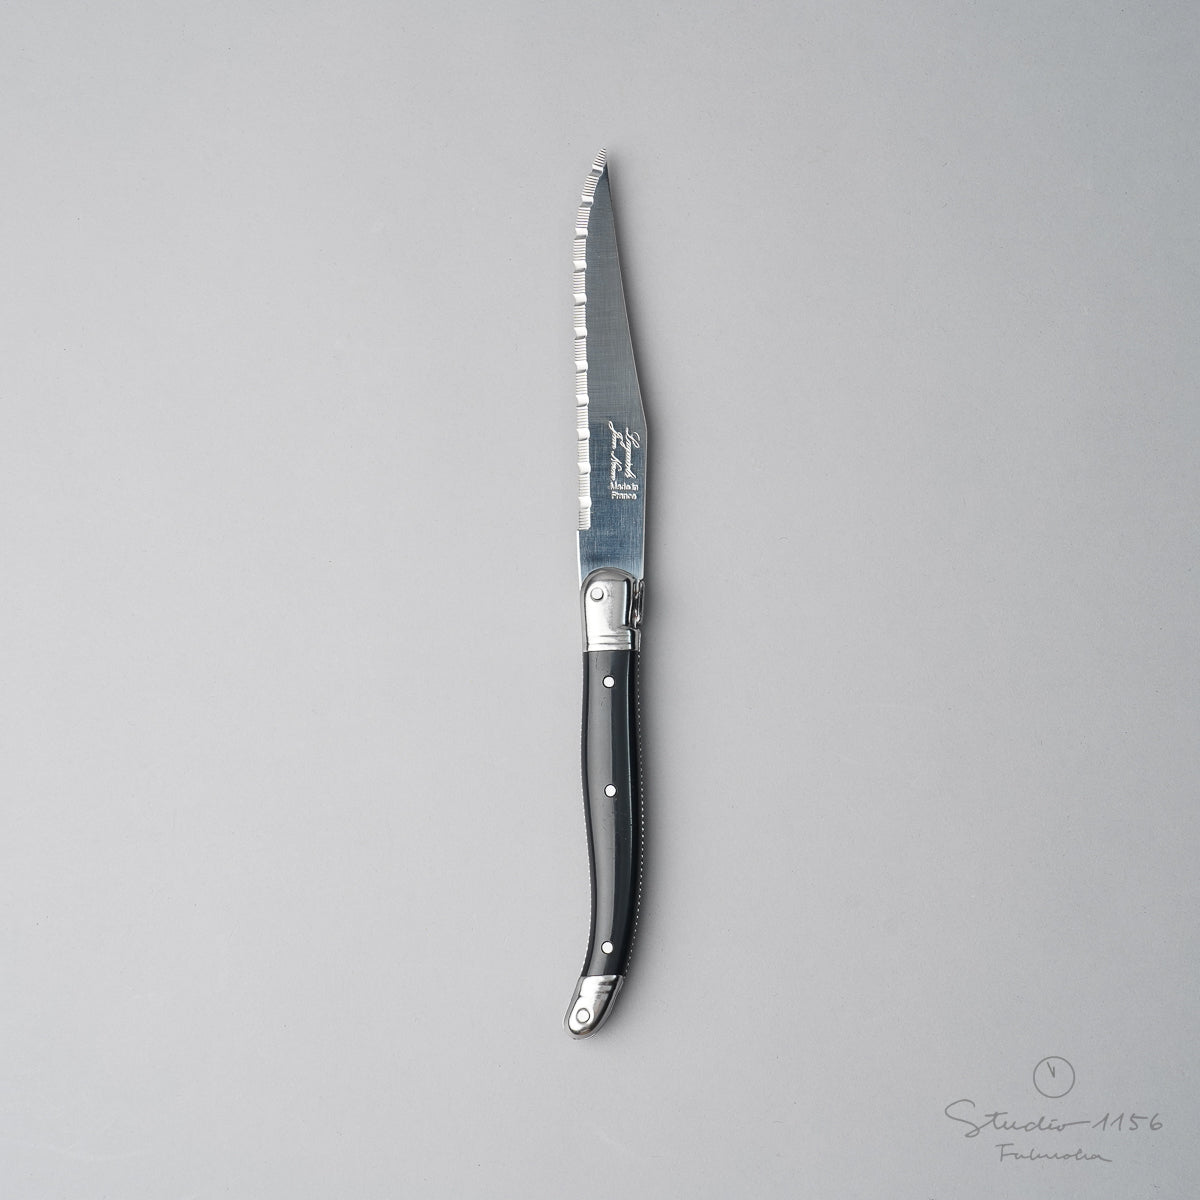 ジャン・ネロン ライヨール ステーキナイフ 23cm Black(ブラック) Cutlery-neron Studio1156